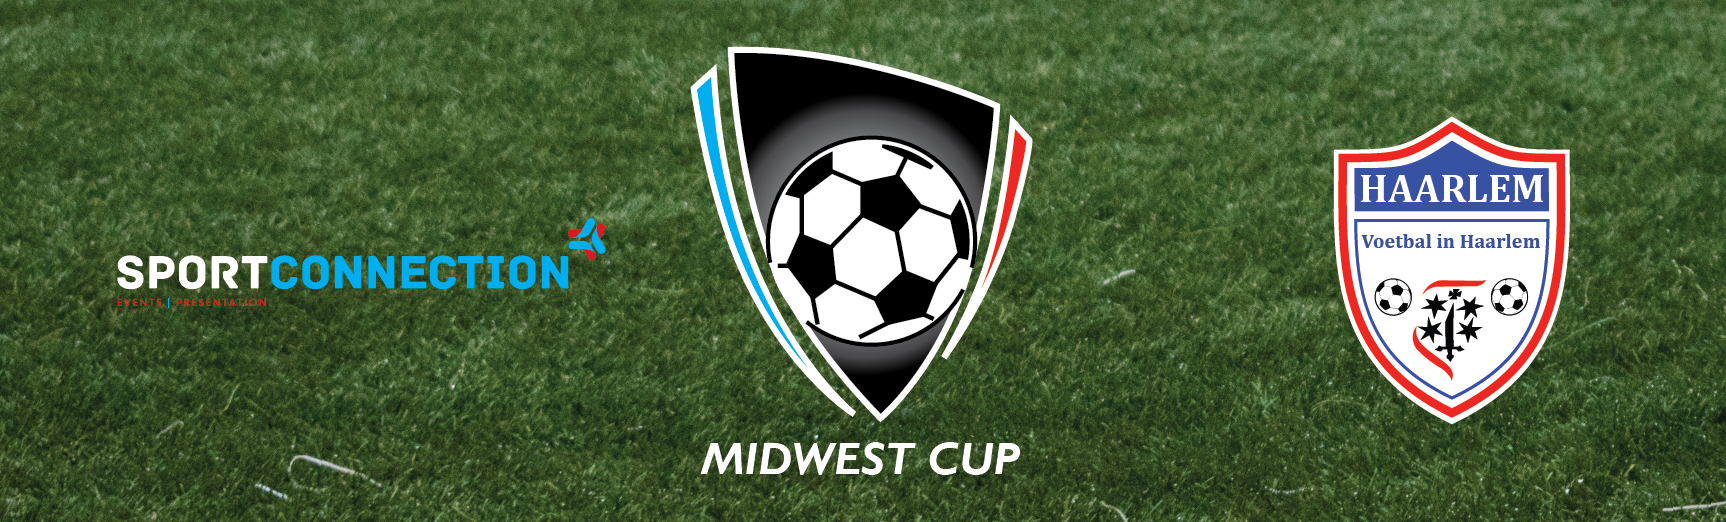 Header-Website-MidWest-Cup-Voetbal-in-Haarlem